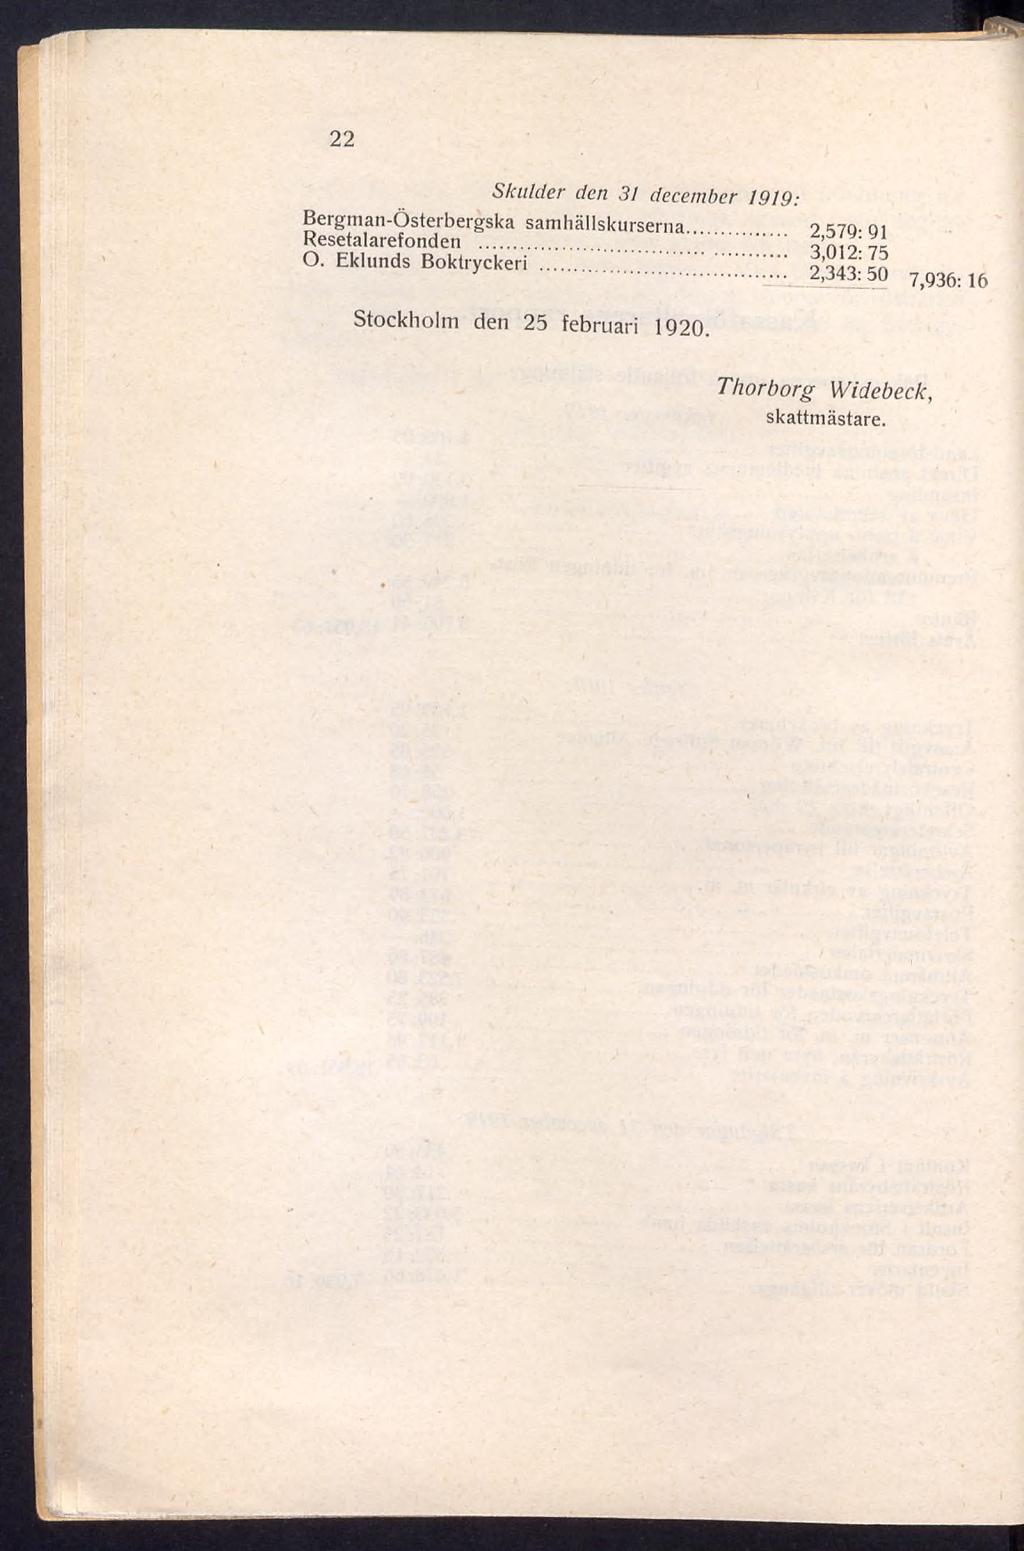 22 Skulder den 31 december 1919: Bergman-Österbergska samhällskurserna Resetalarefonden...... O.